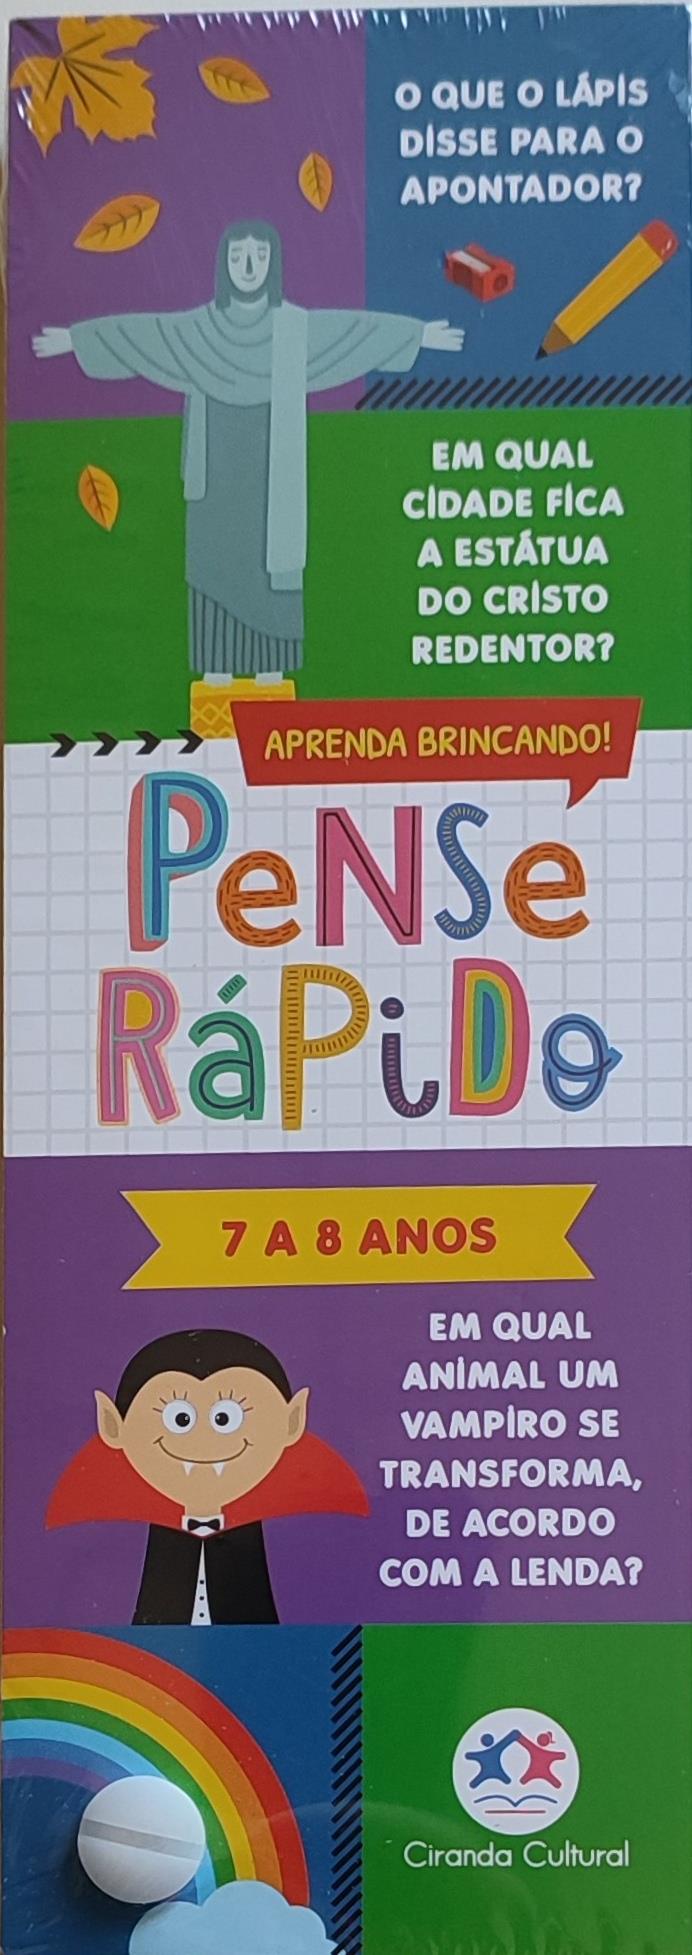 PENSE RPIDO - 7 A 8 ANOS